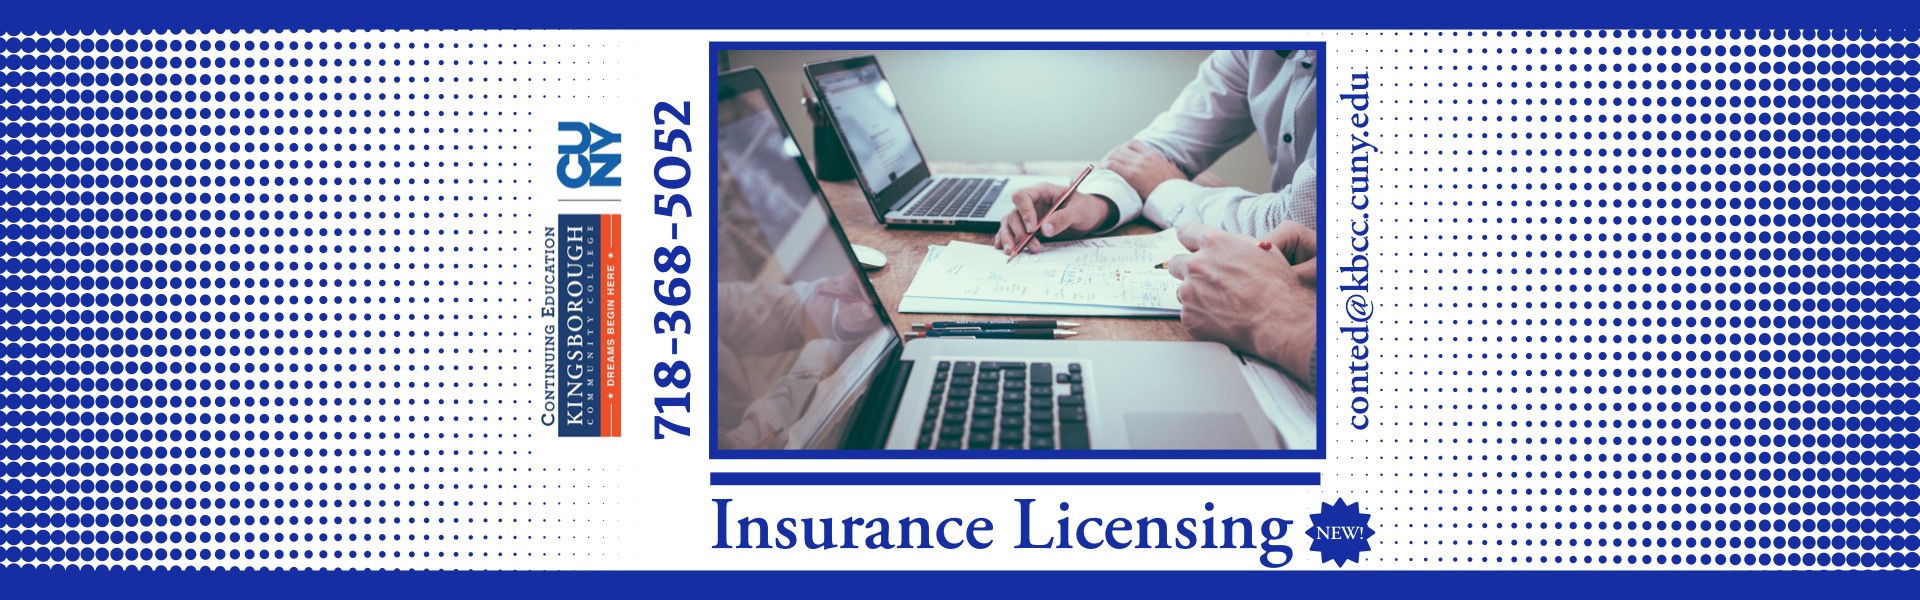 Insurance Licensing